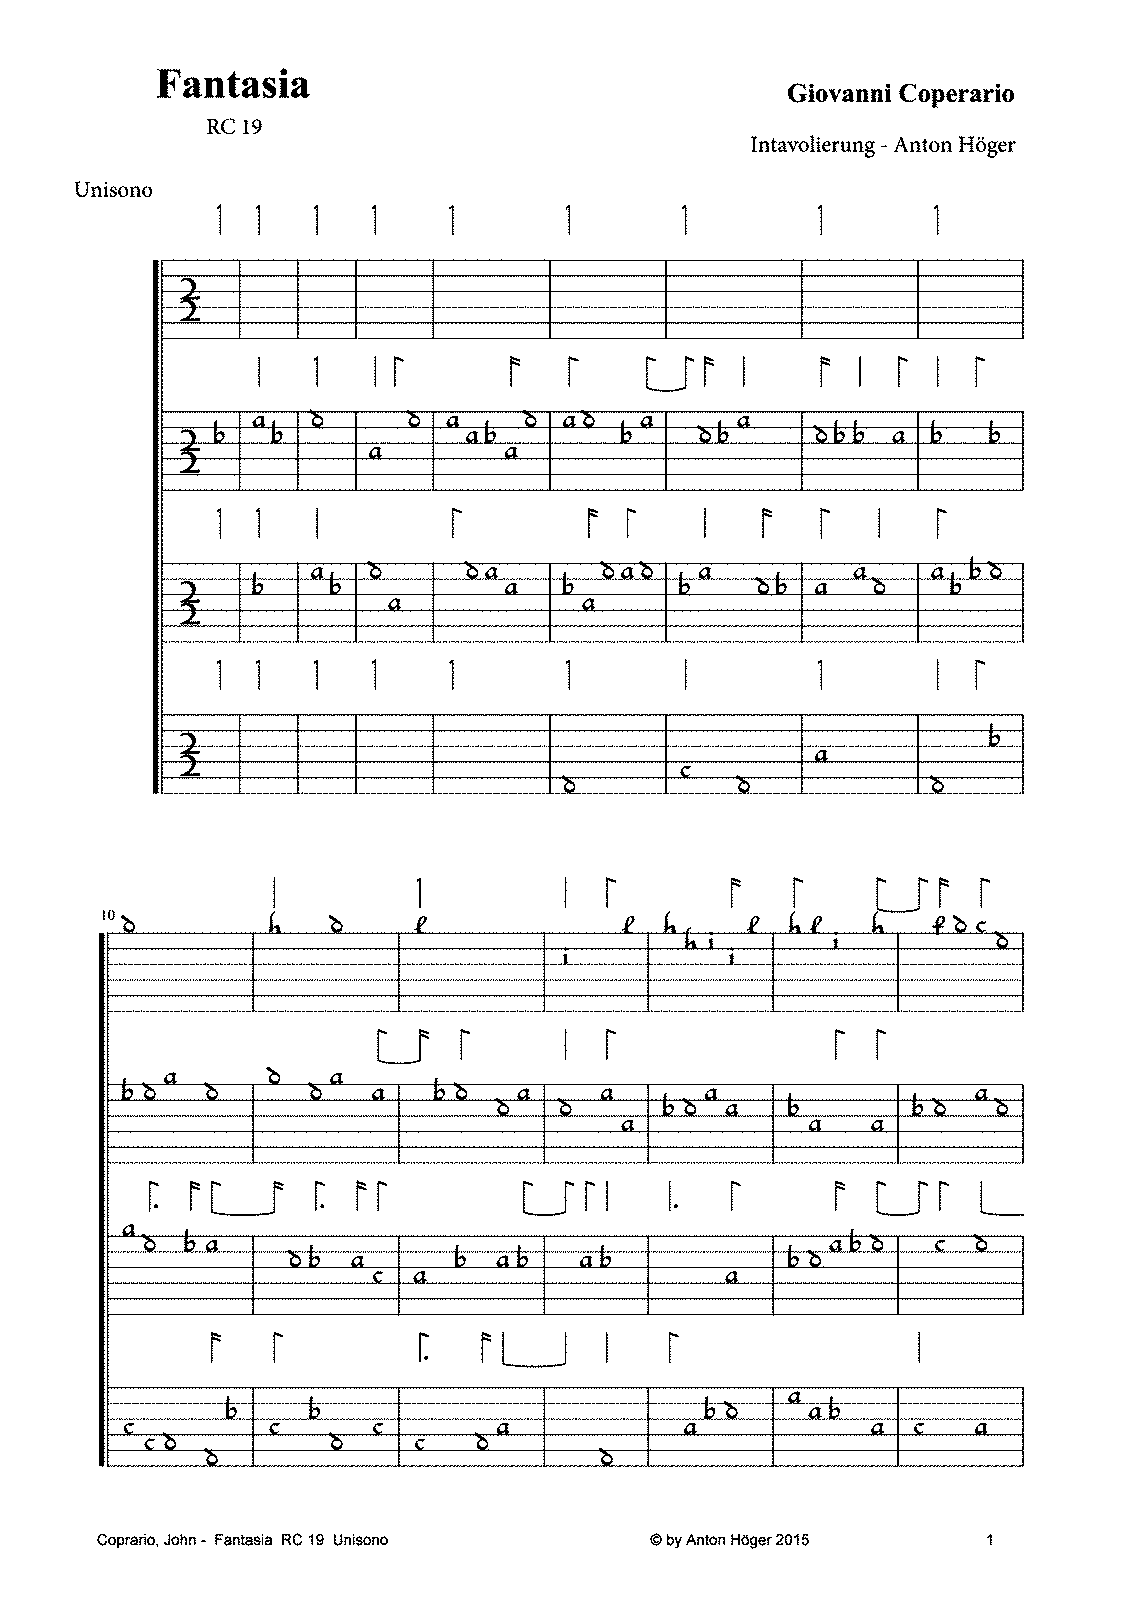 Fantasia for 4 Viols, RC 19 (Coperario, John) - IMSLP